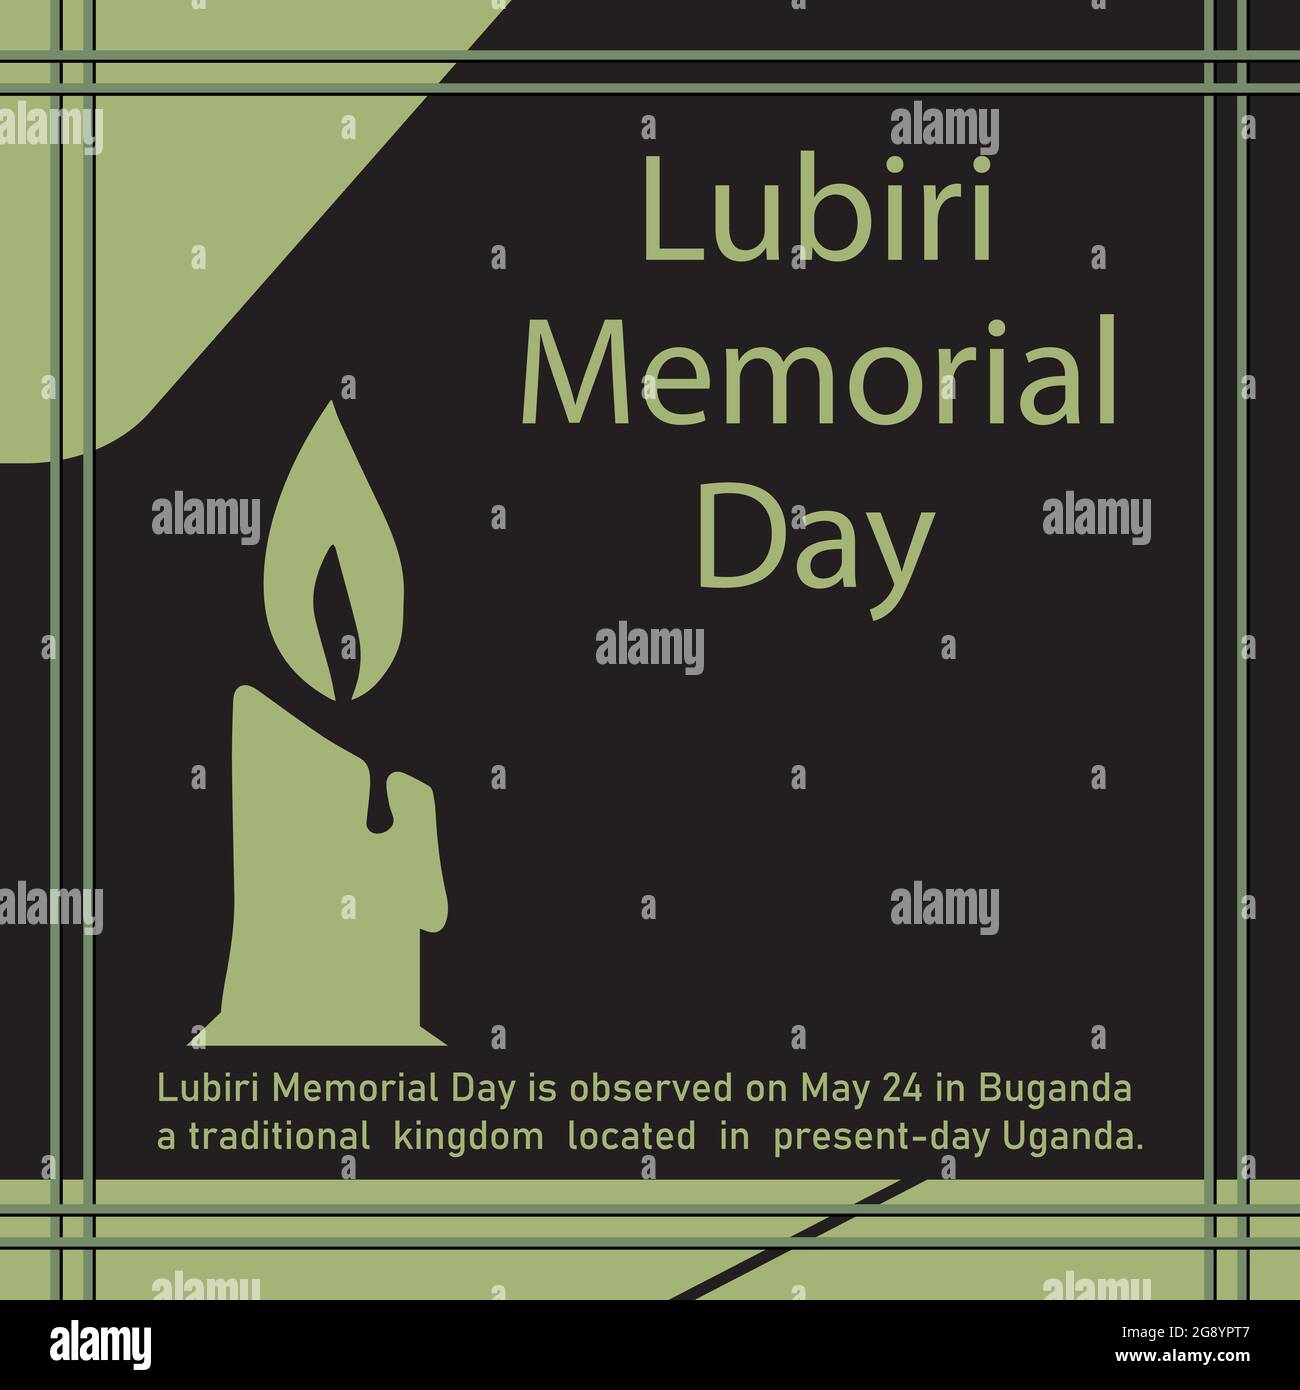 Il Lubiri Memorial Day si celebra il 24 maggio a Buganda, un regno tradizionale situato nell'attuale Uganda. Illustrazione Vettoriale